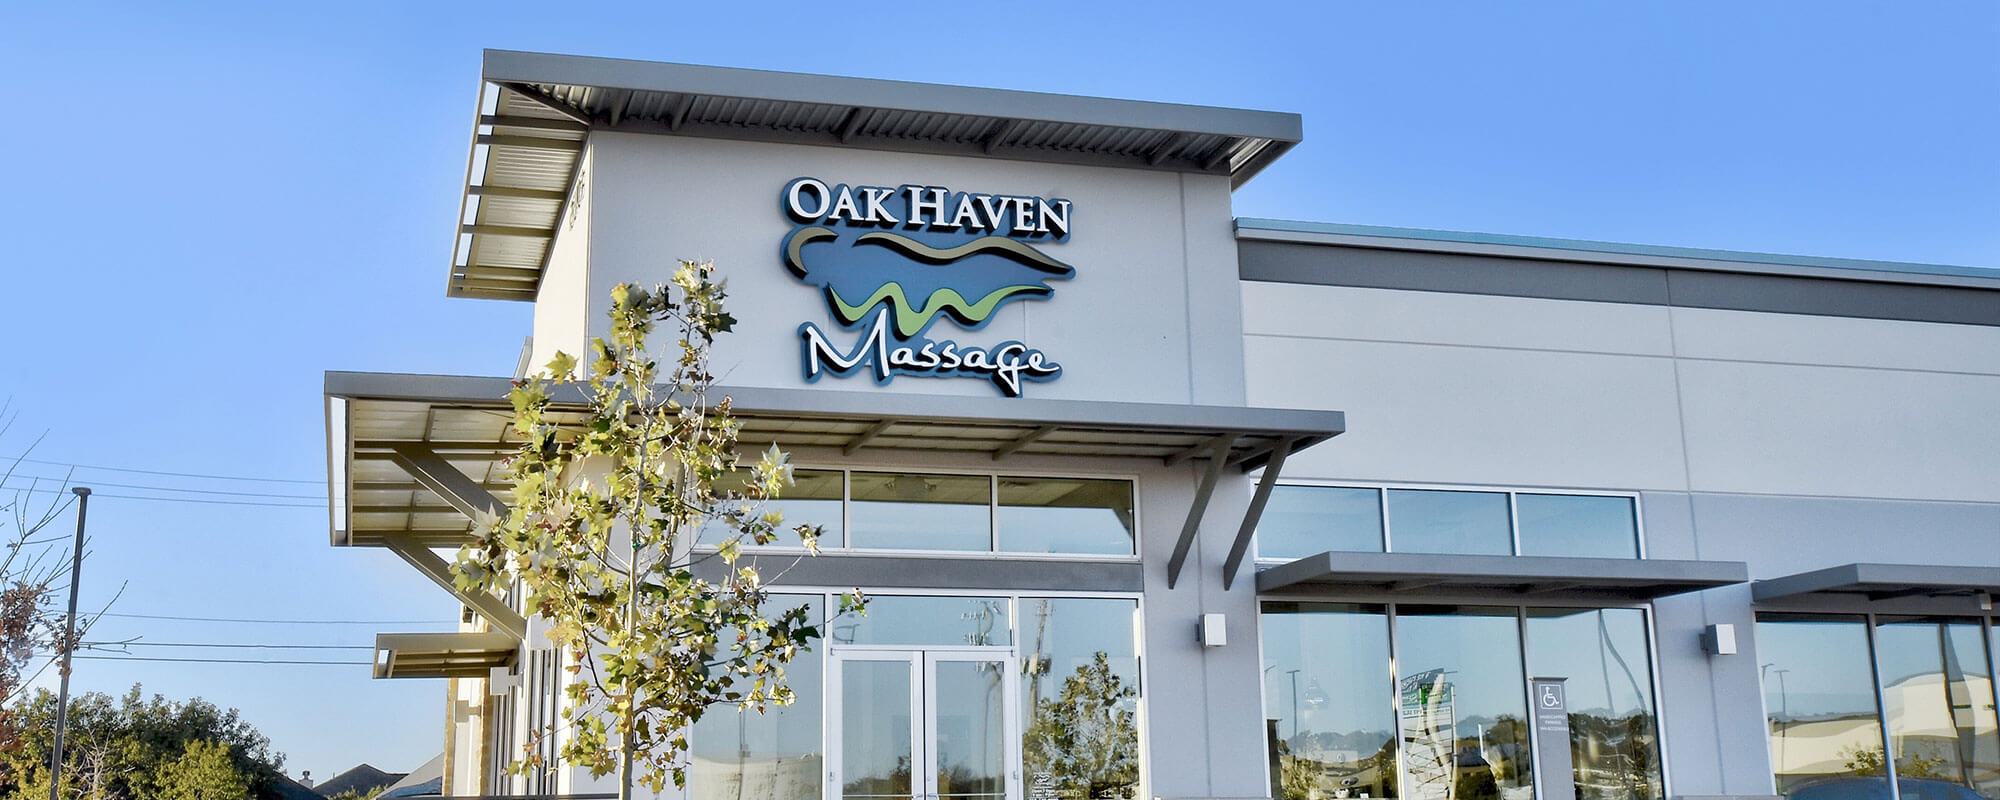 Oak Haven Massage building